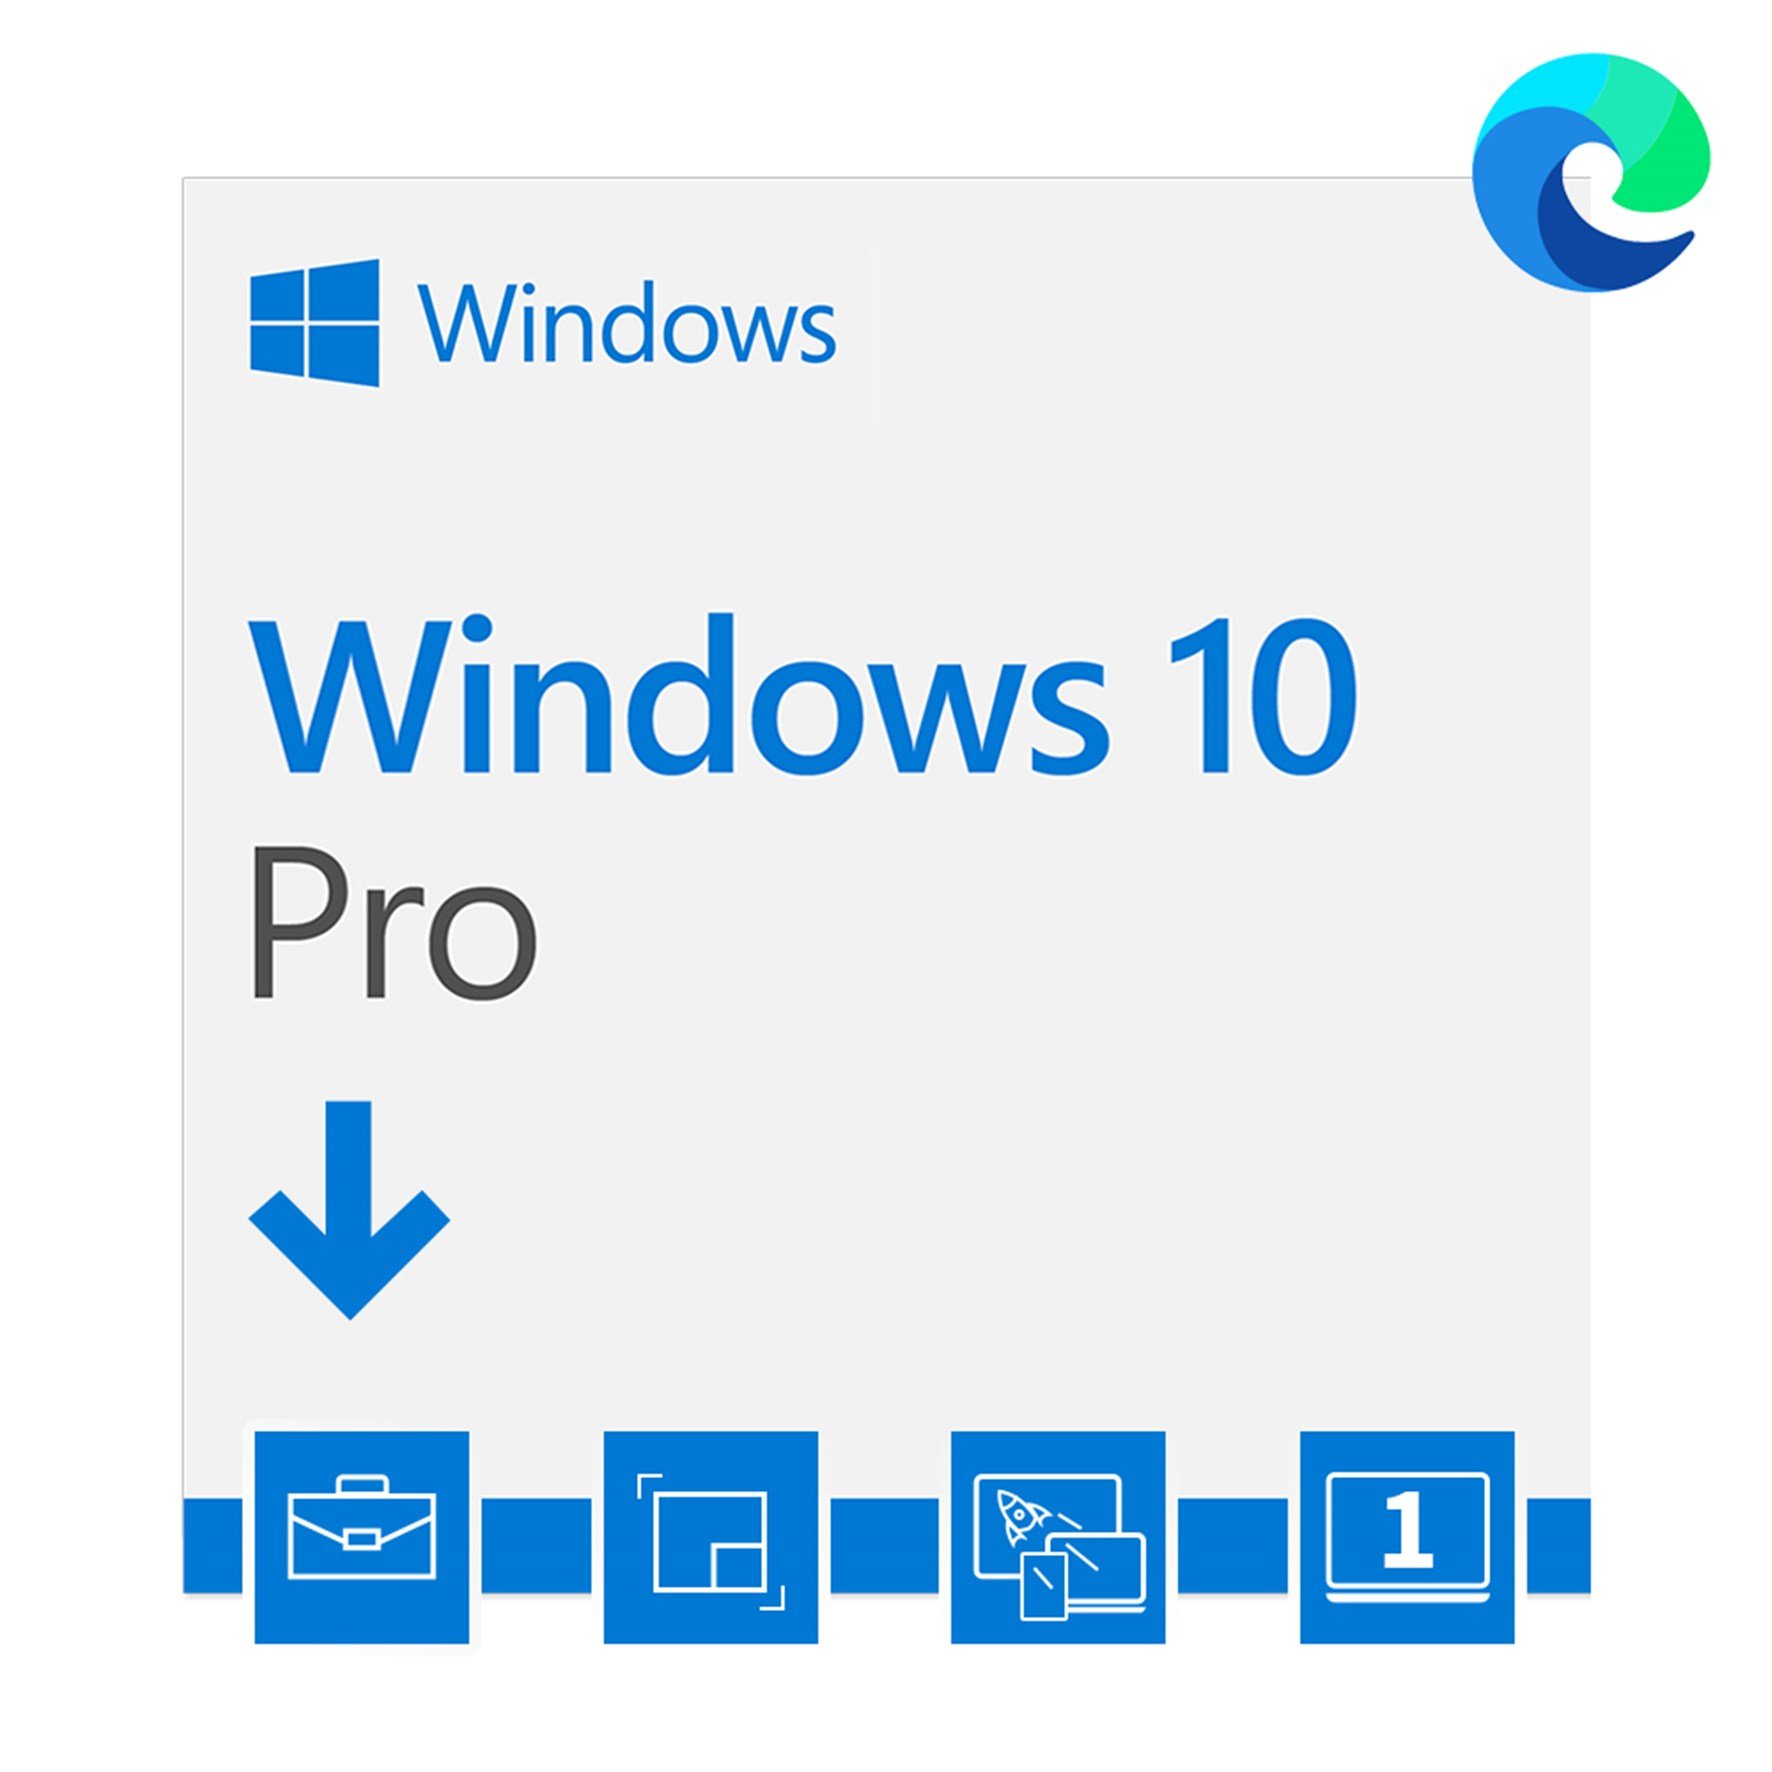 Windows 10 Pro 3264 Bits Esd Fqc 09131 Digital Para Download 6703